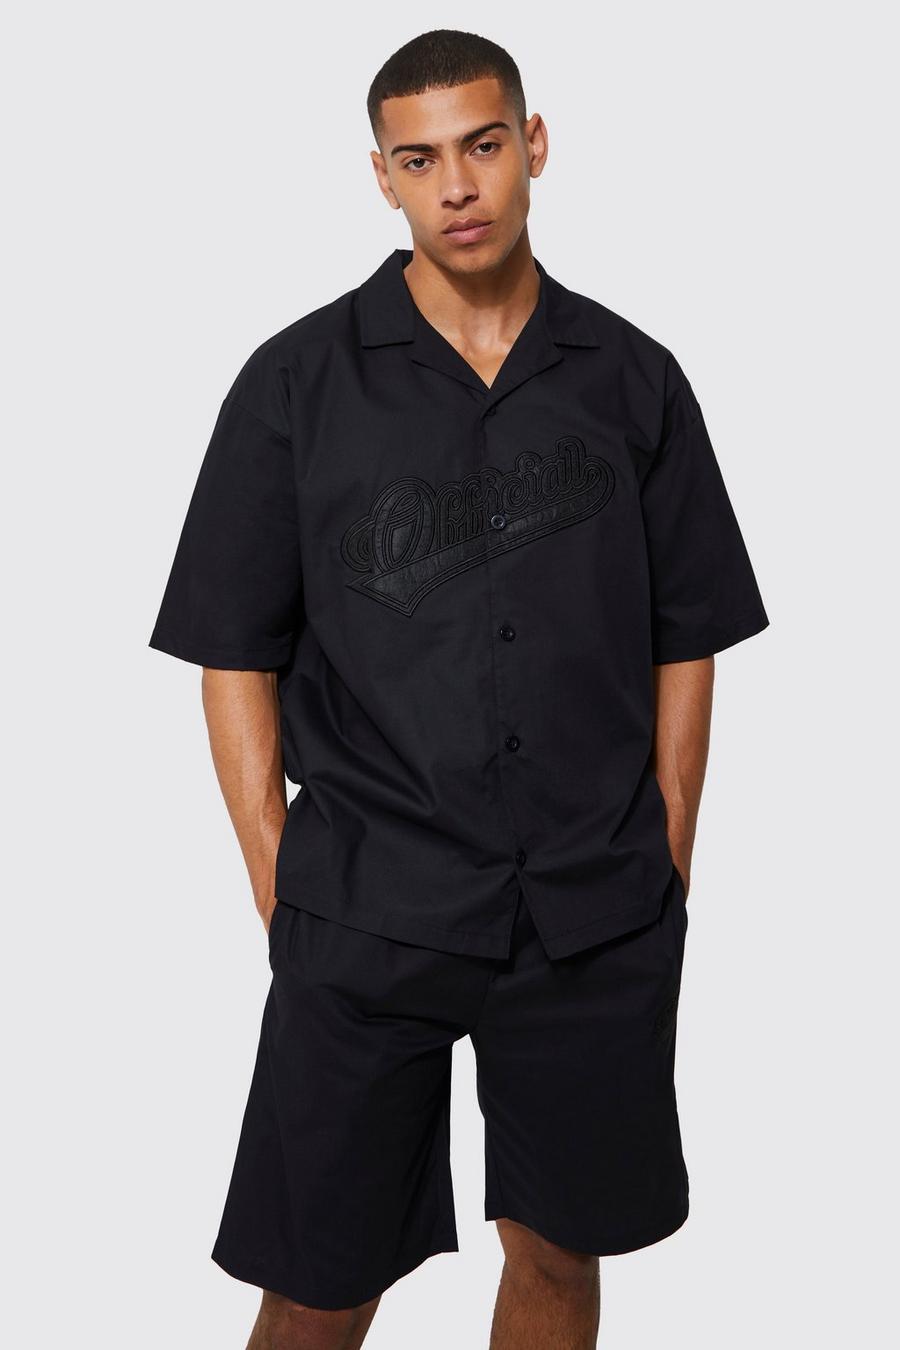 Black noir Short Sleeve Oversized Revere Official Shirt & Short Set